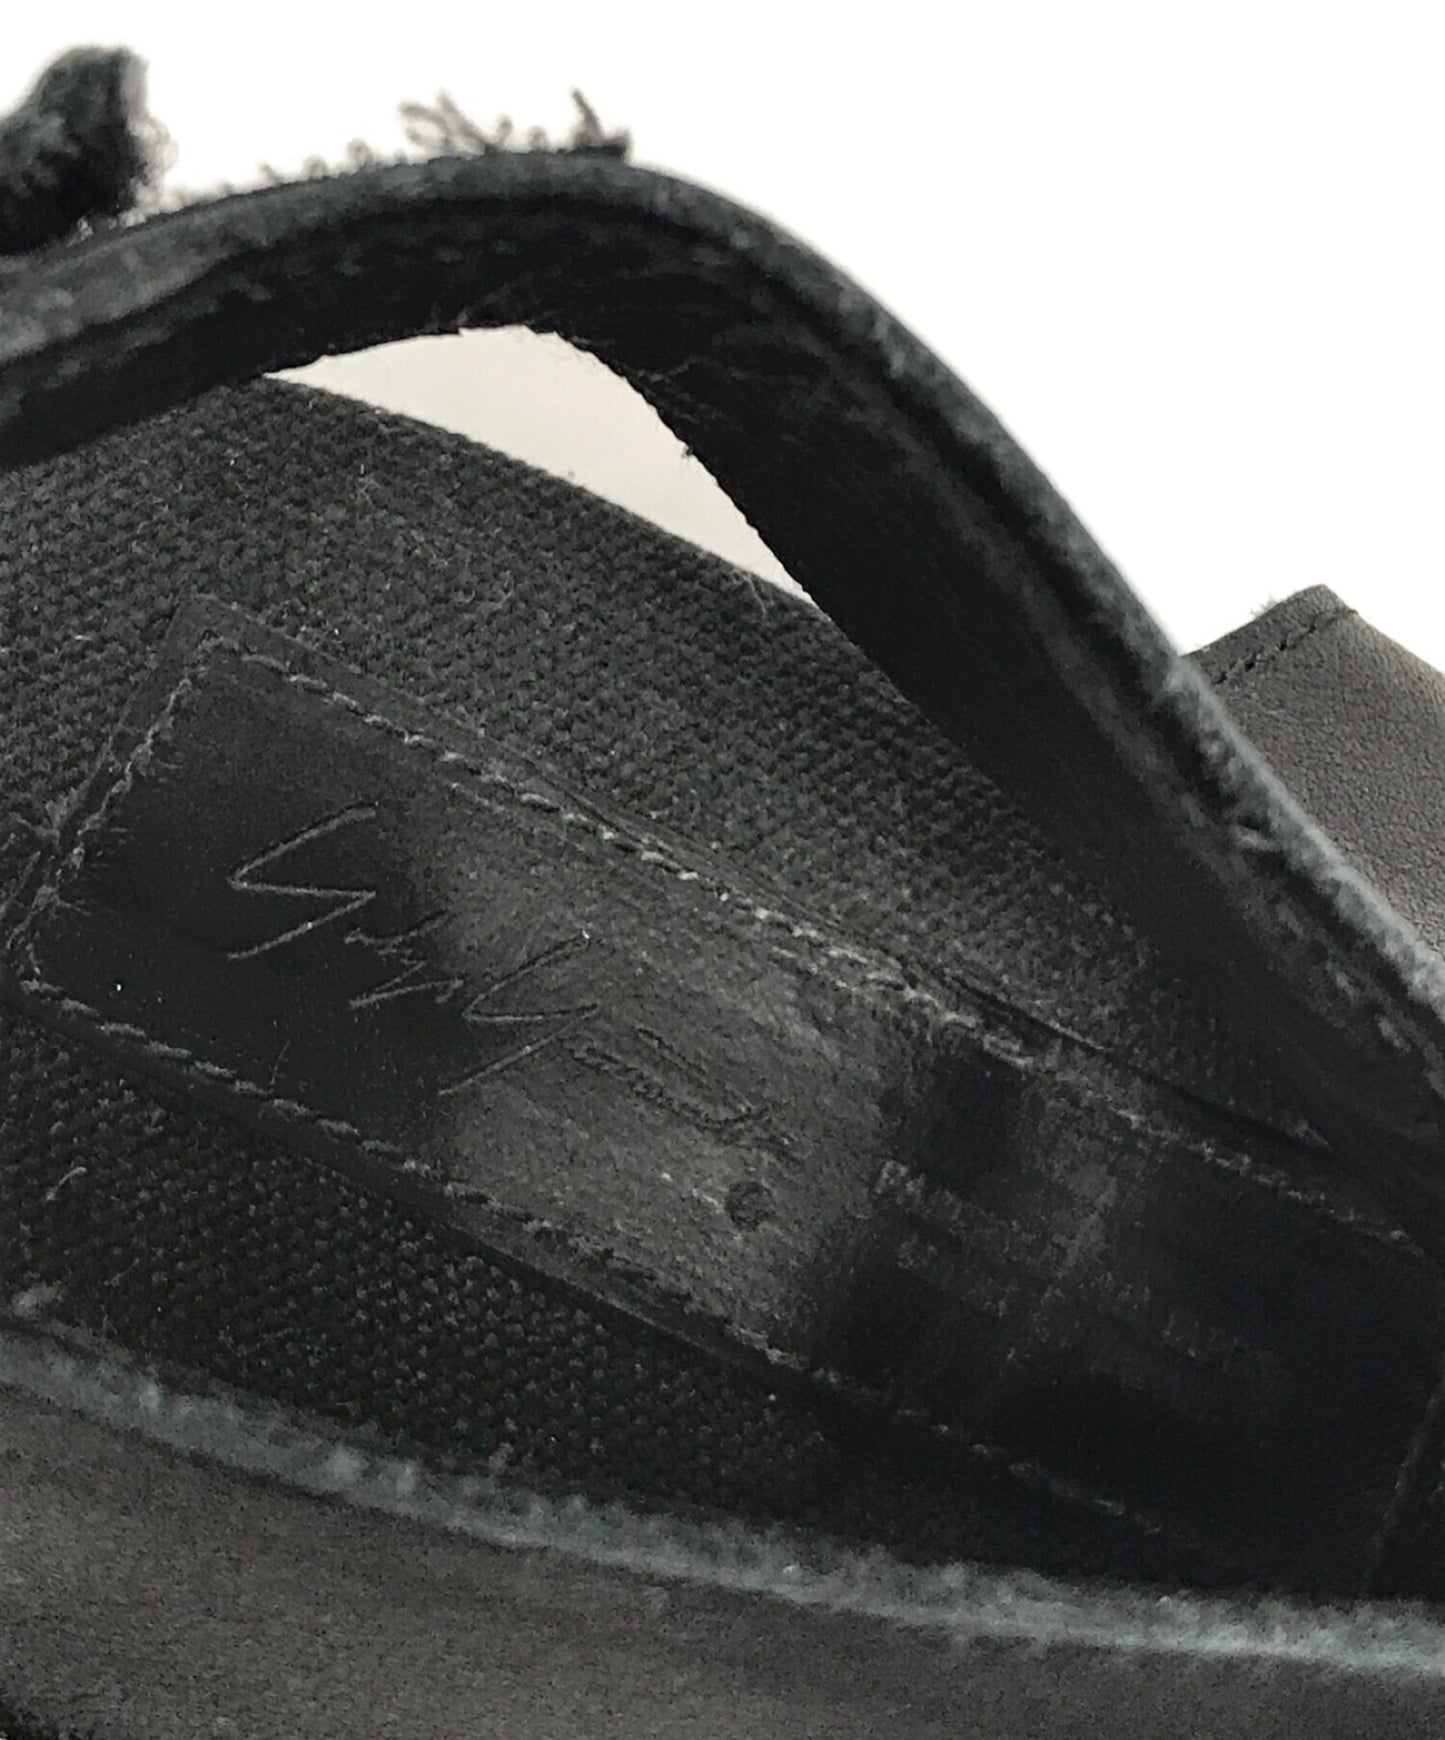 [Pre-owned] YOHJI YAMAMOTO Back strap sandals FH-E01-763-1-04